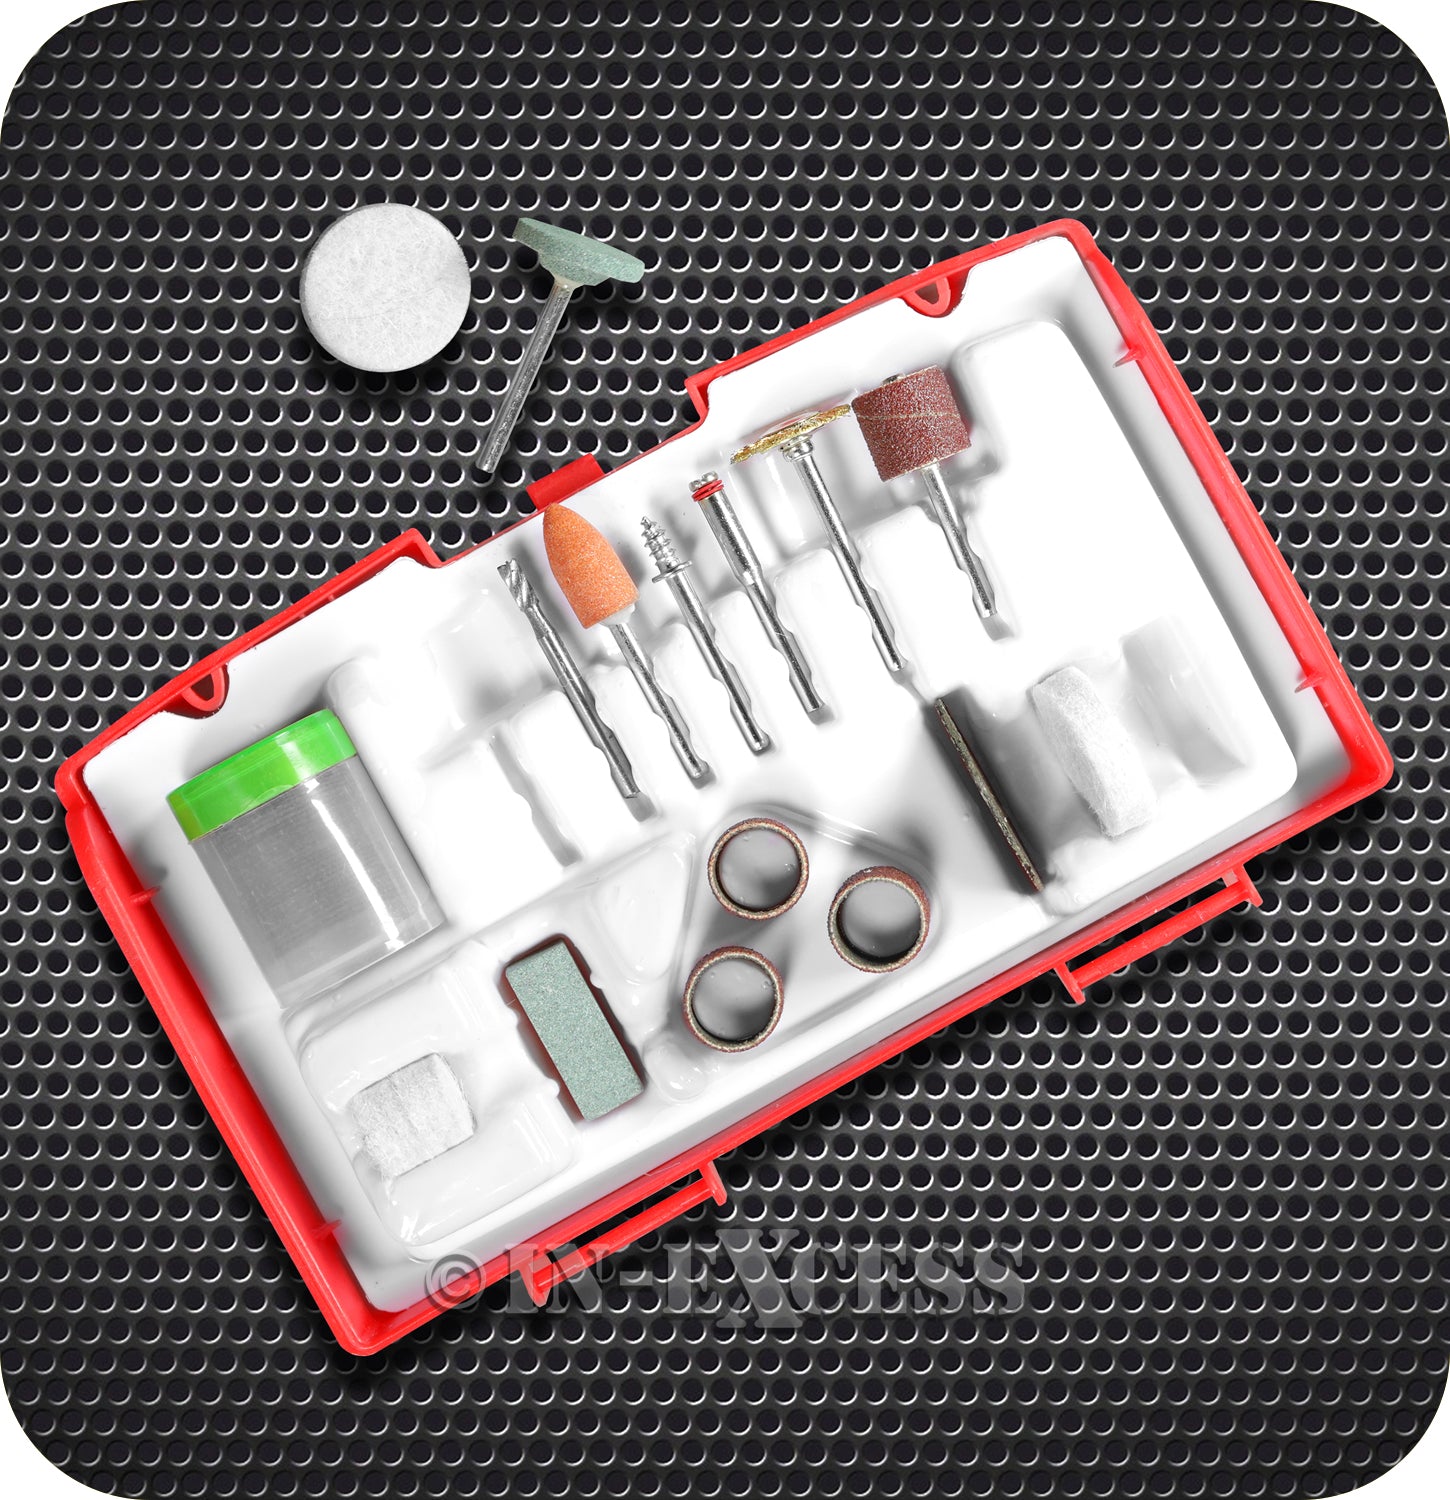 Dekton Mini Power Tool Hobby Accessory Kit - Set of 52 Pieces